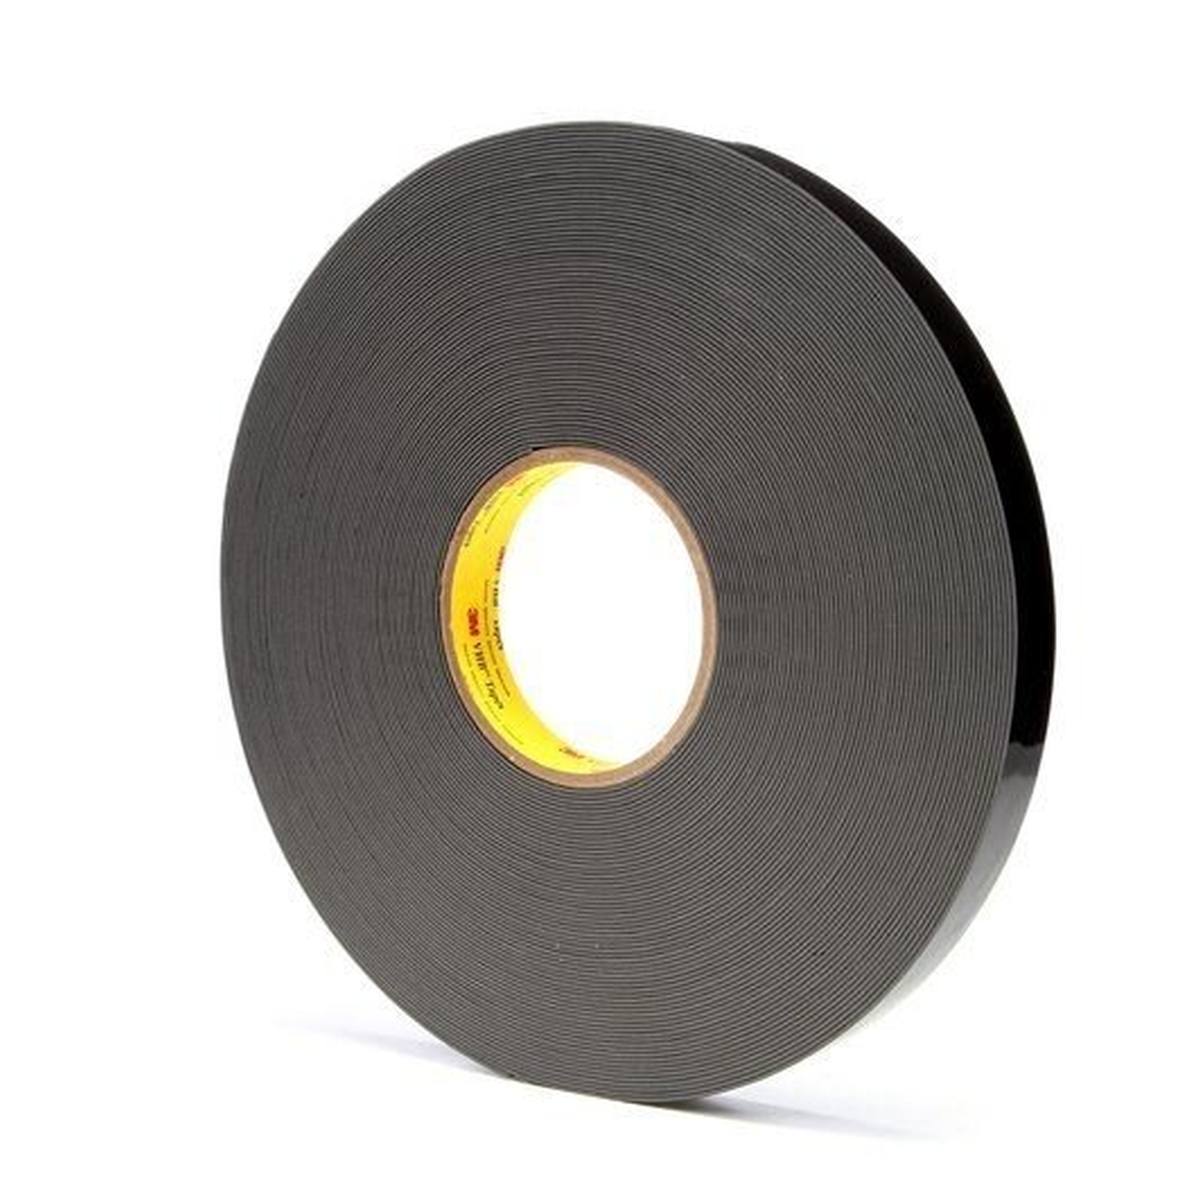 3M VHB adhesive tape 4929F, black, 25 mm x 33 m, 0.6 mm